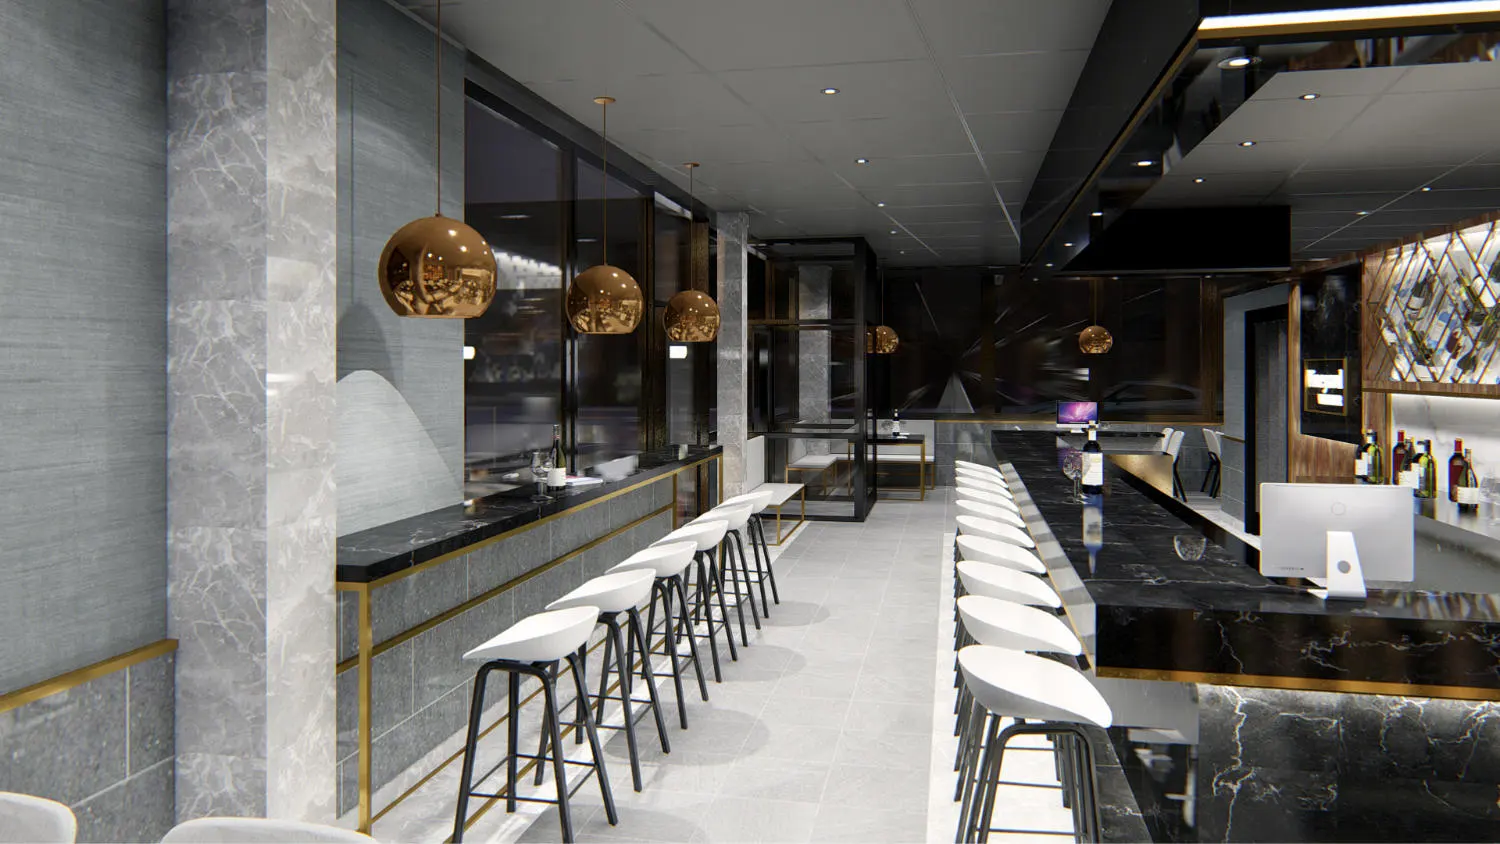 Interior design project for Vineyard Wine Bar. Designed 3D rendering